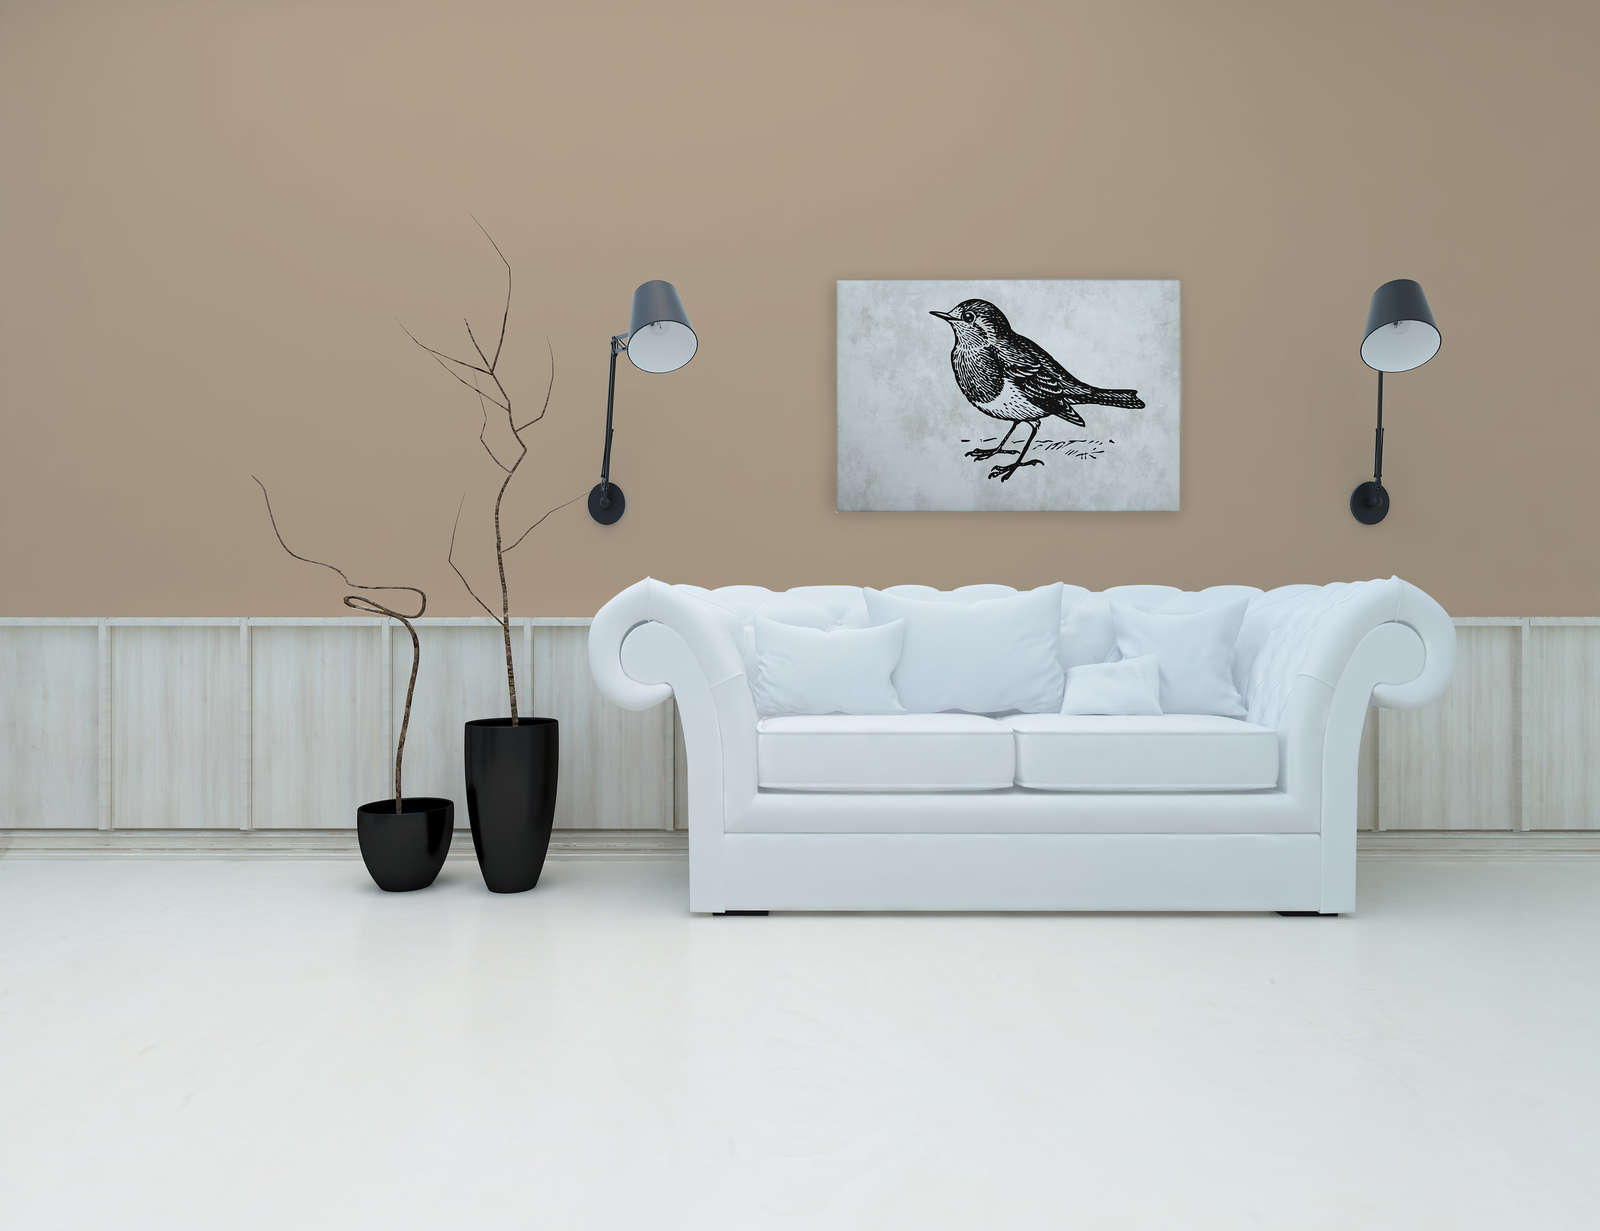             Lienzo en blanco y negro con pájaro - 0,90 m x 0,60 m
        